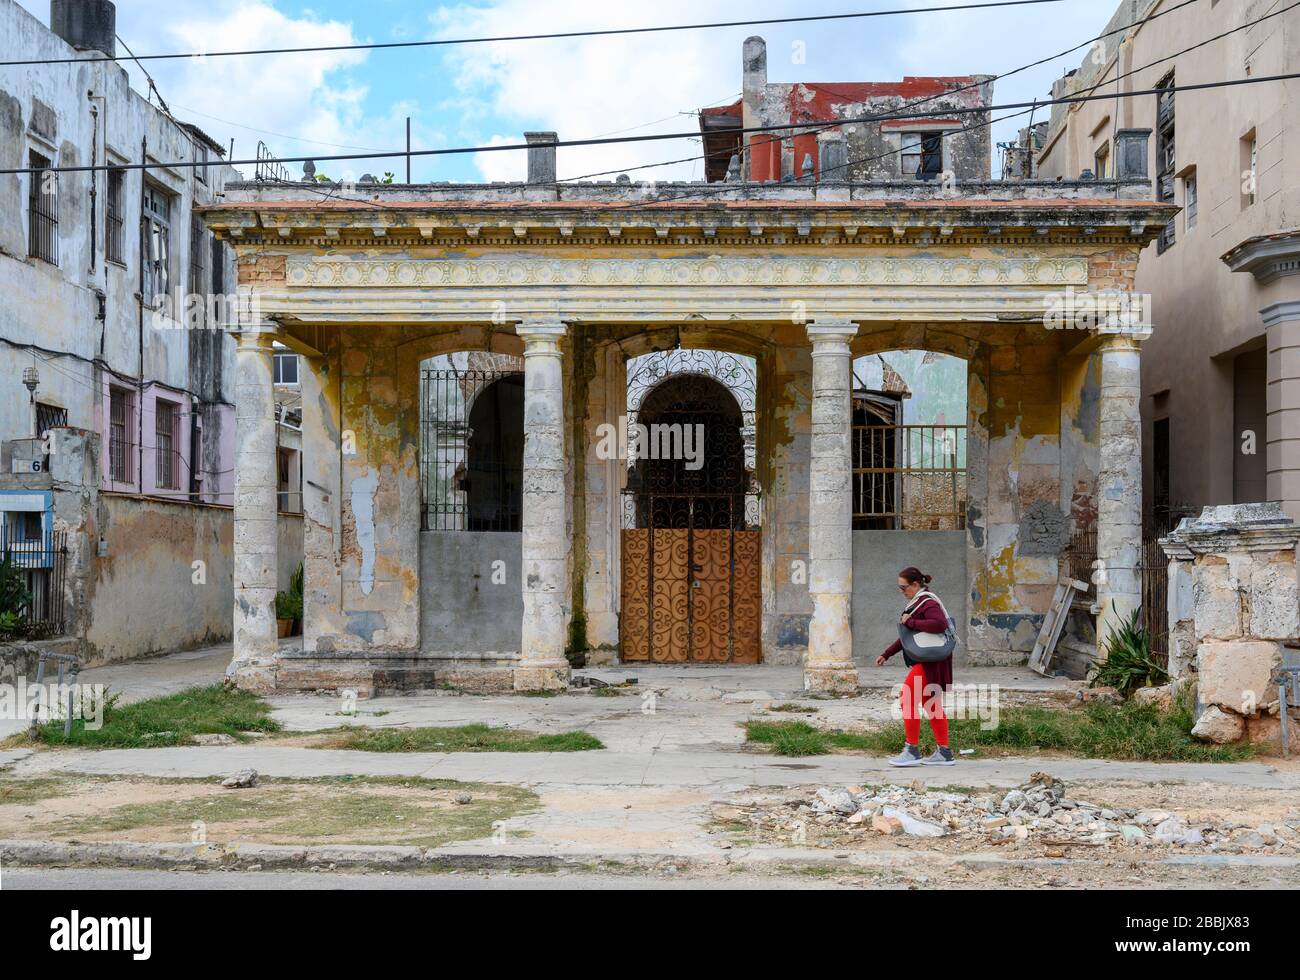 Building facade needing repair, Vedado, Havana, Cuba Stock Photo